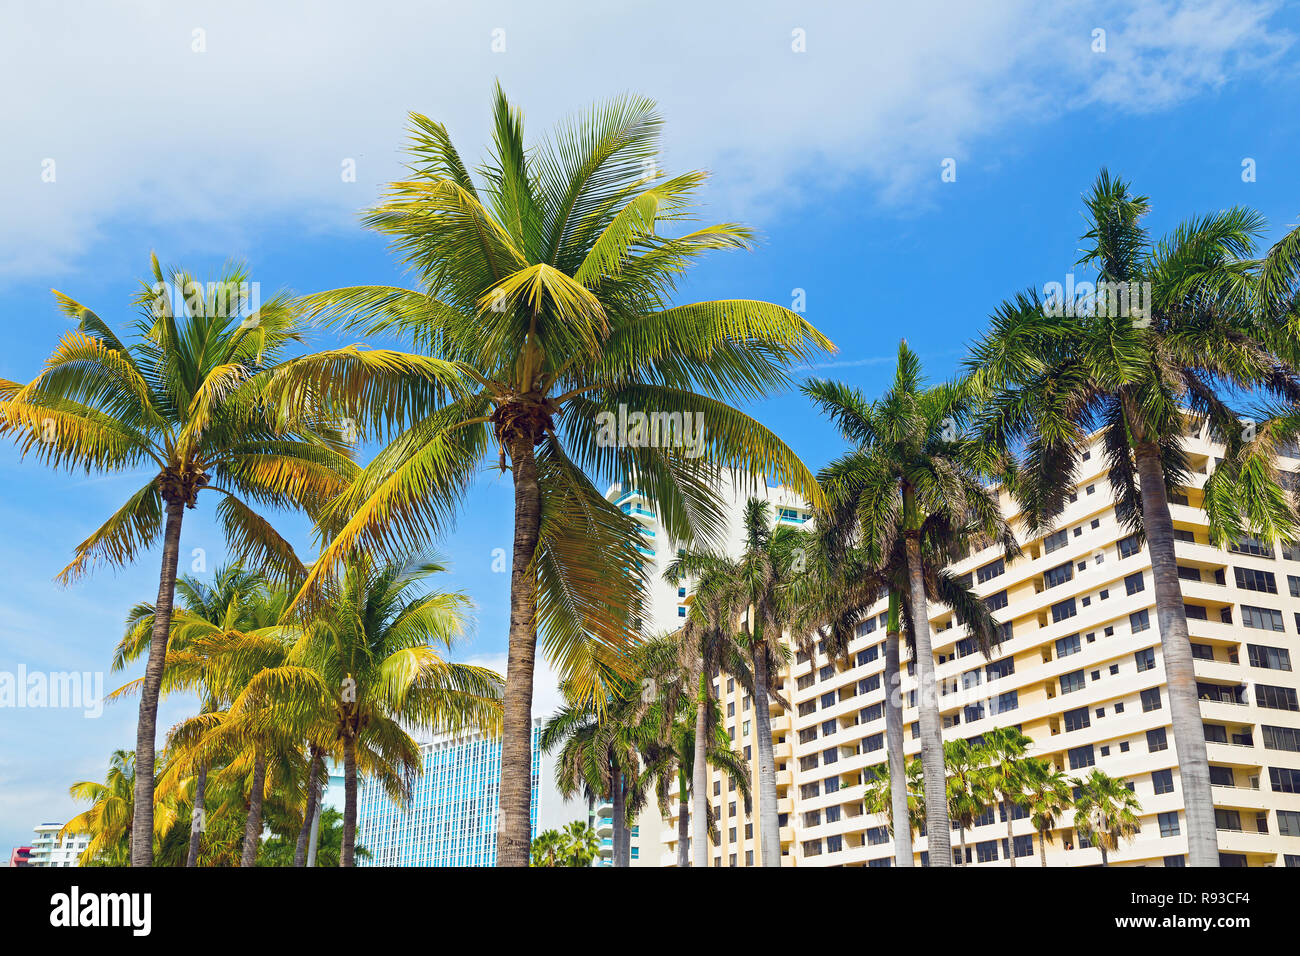 Les palmiers et les bâtiments modernes de Miami Beach. Destination vacances - Miami Beach, Floride, USA Banque D'Images